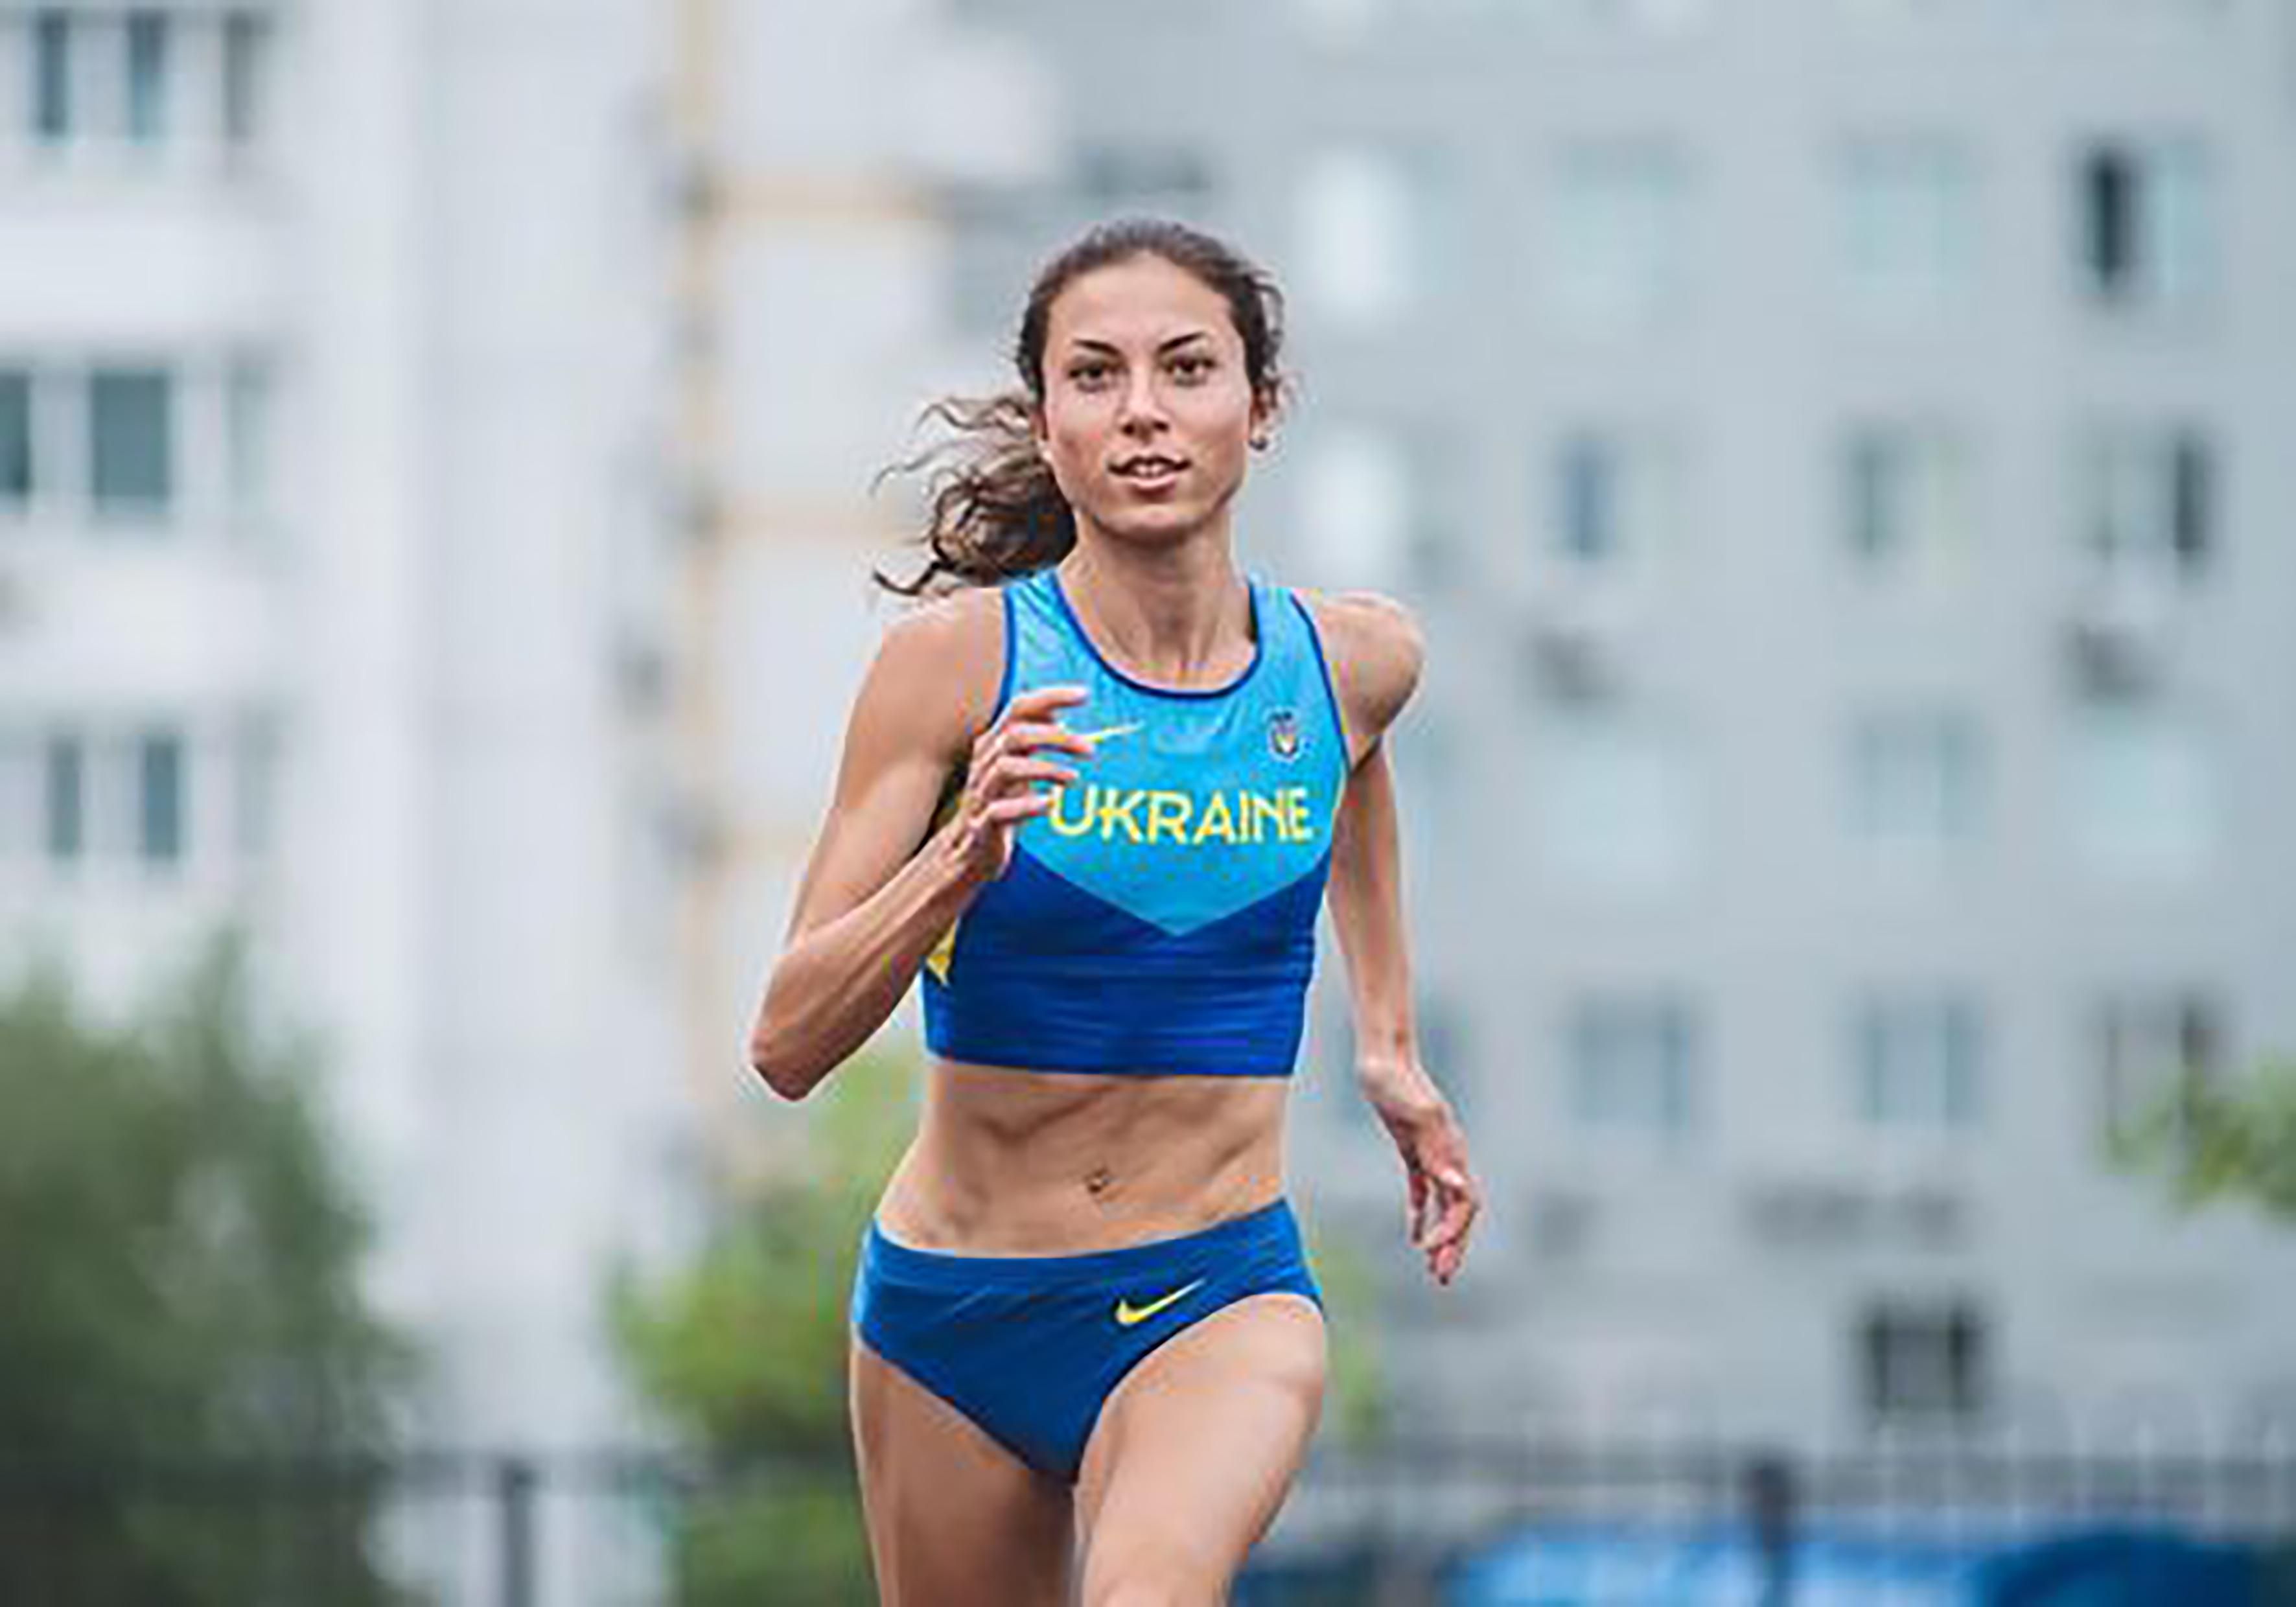 Людські можливості необмежені: українська бігунка постить мотиваційні фото та відео в Instagram